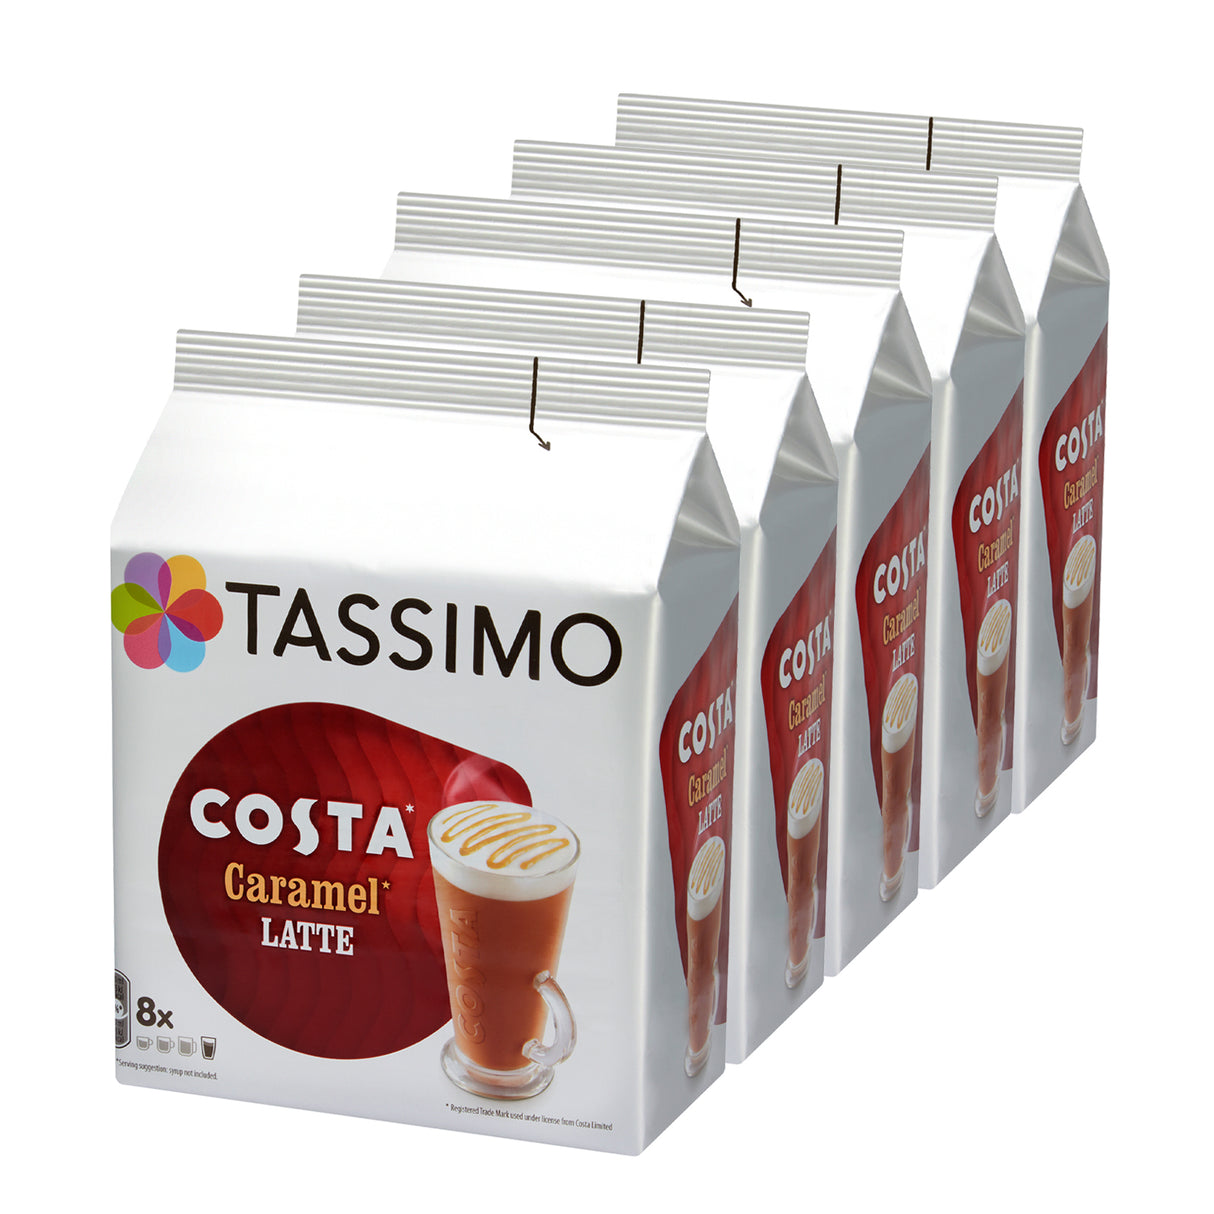 Tassimo Costa Caramel Latte 5 pack